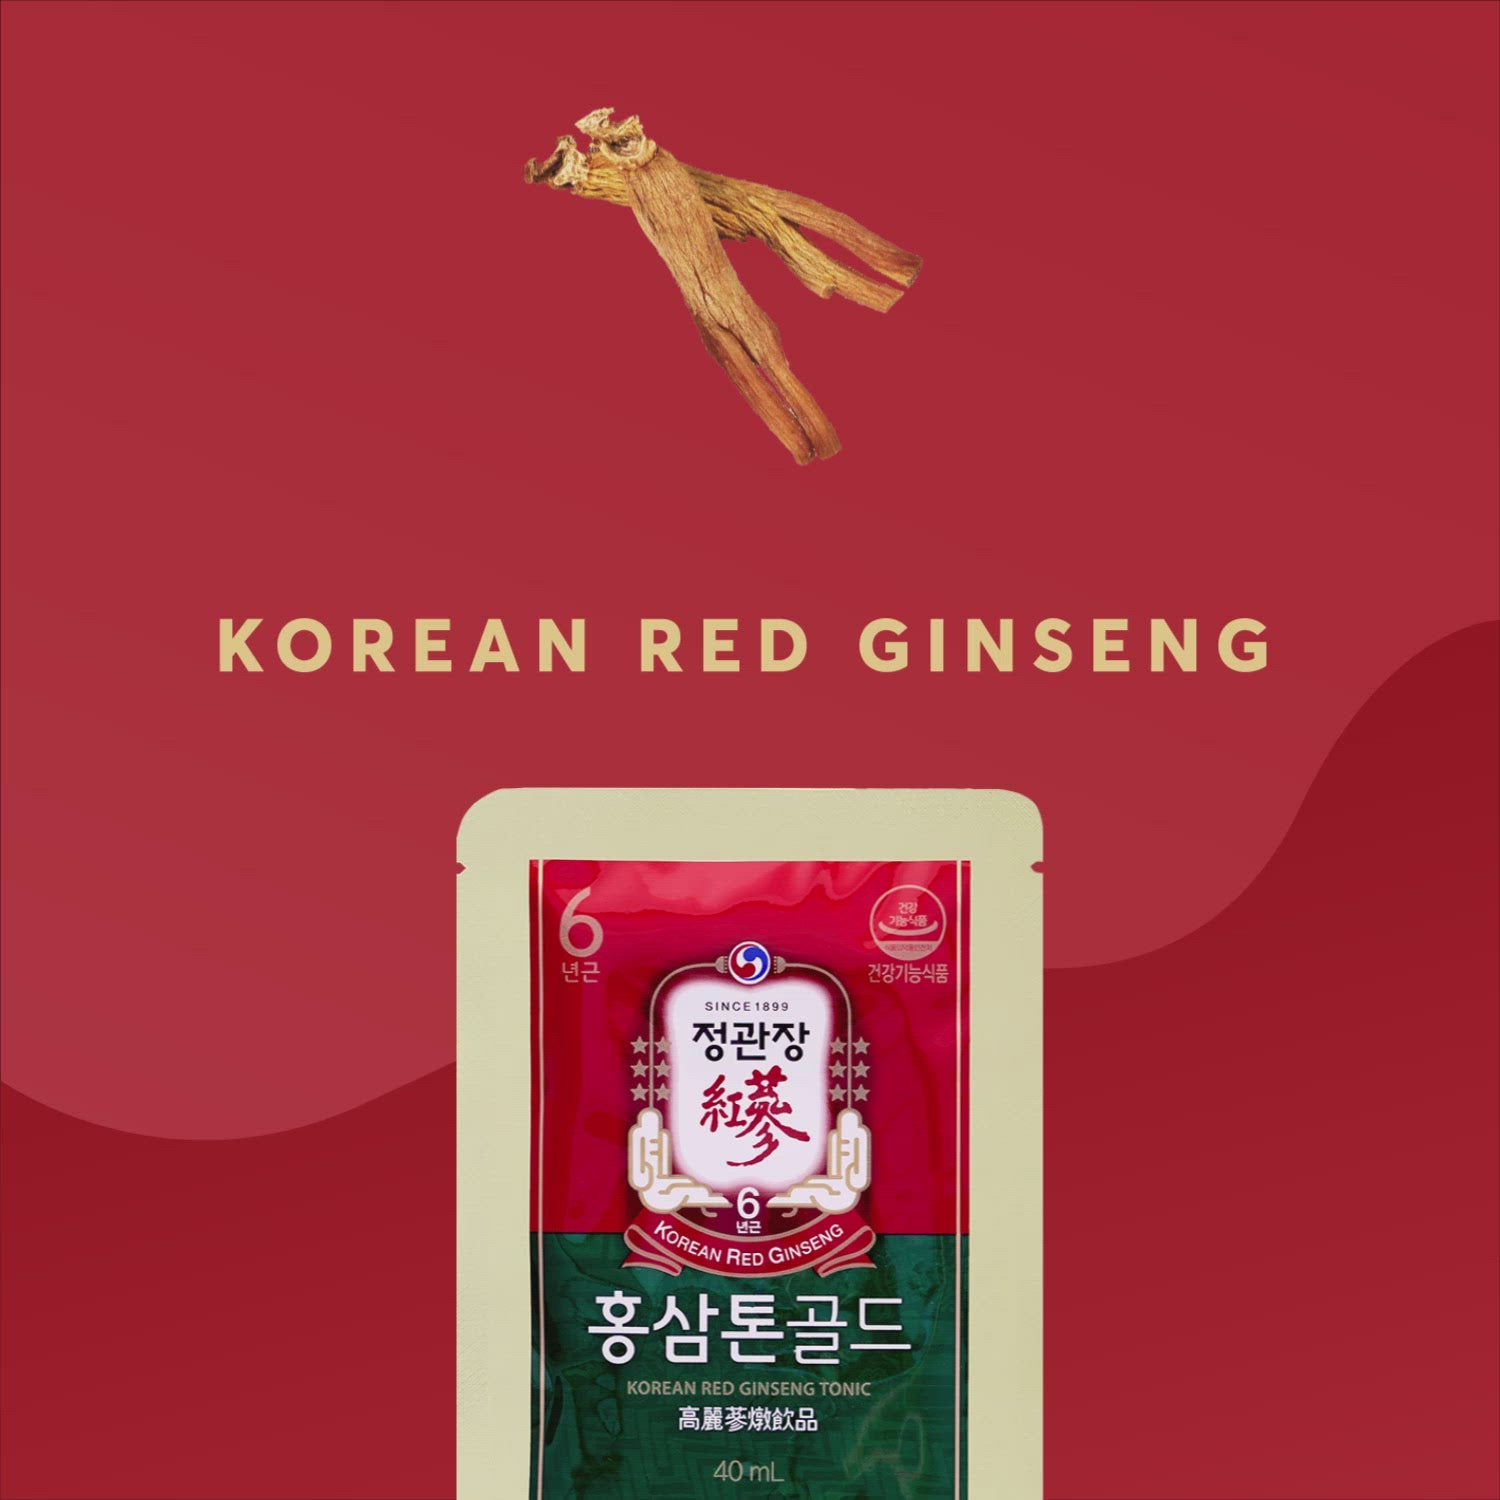 Cheong Kwan Jang Korean Red Ginseng Extract Tonic Gold 高丽参炖 [金]